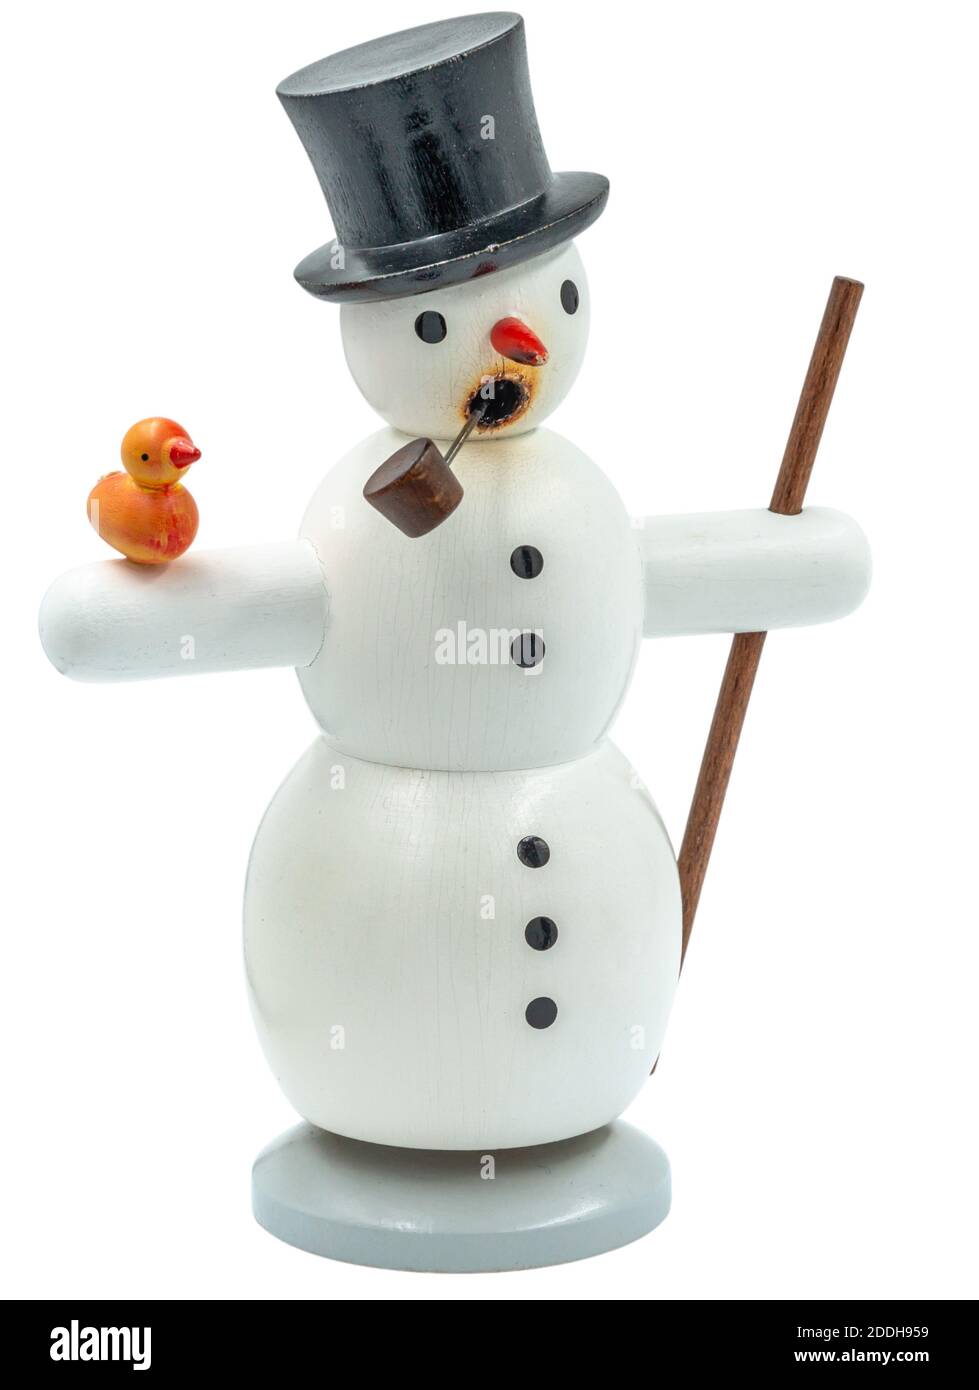 Original geschnitzten hölzernen Schneemann Weihnachten Smoking Mann Figur geschnitten Auf weißem Hintergrund Stockfoto